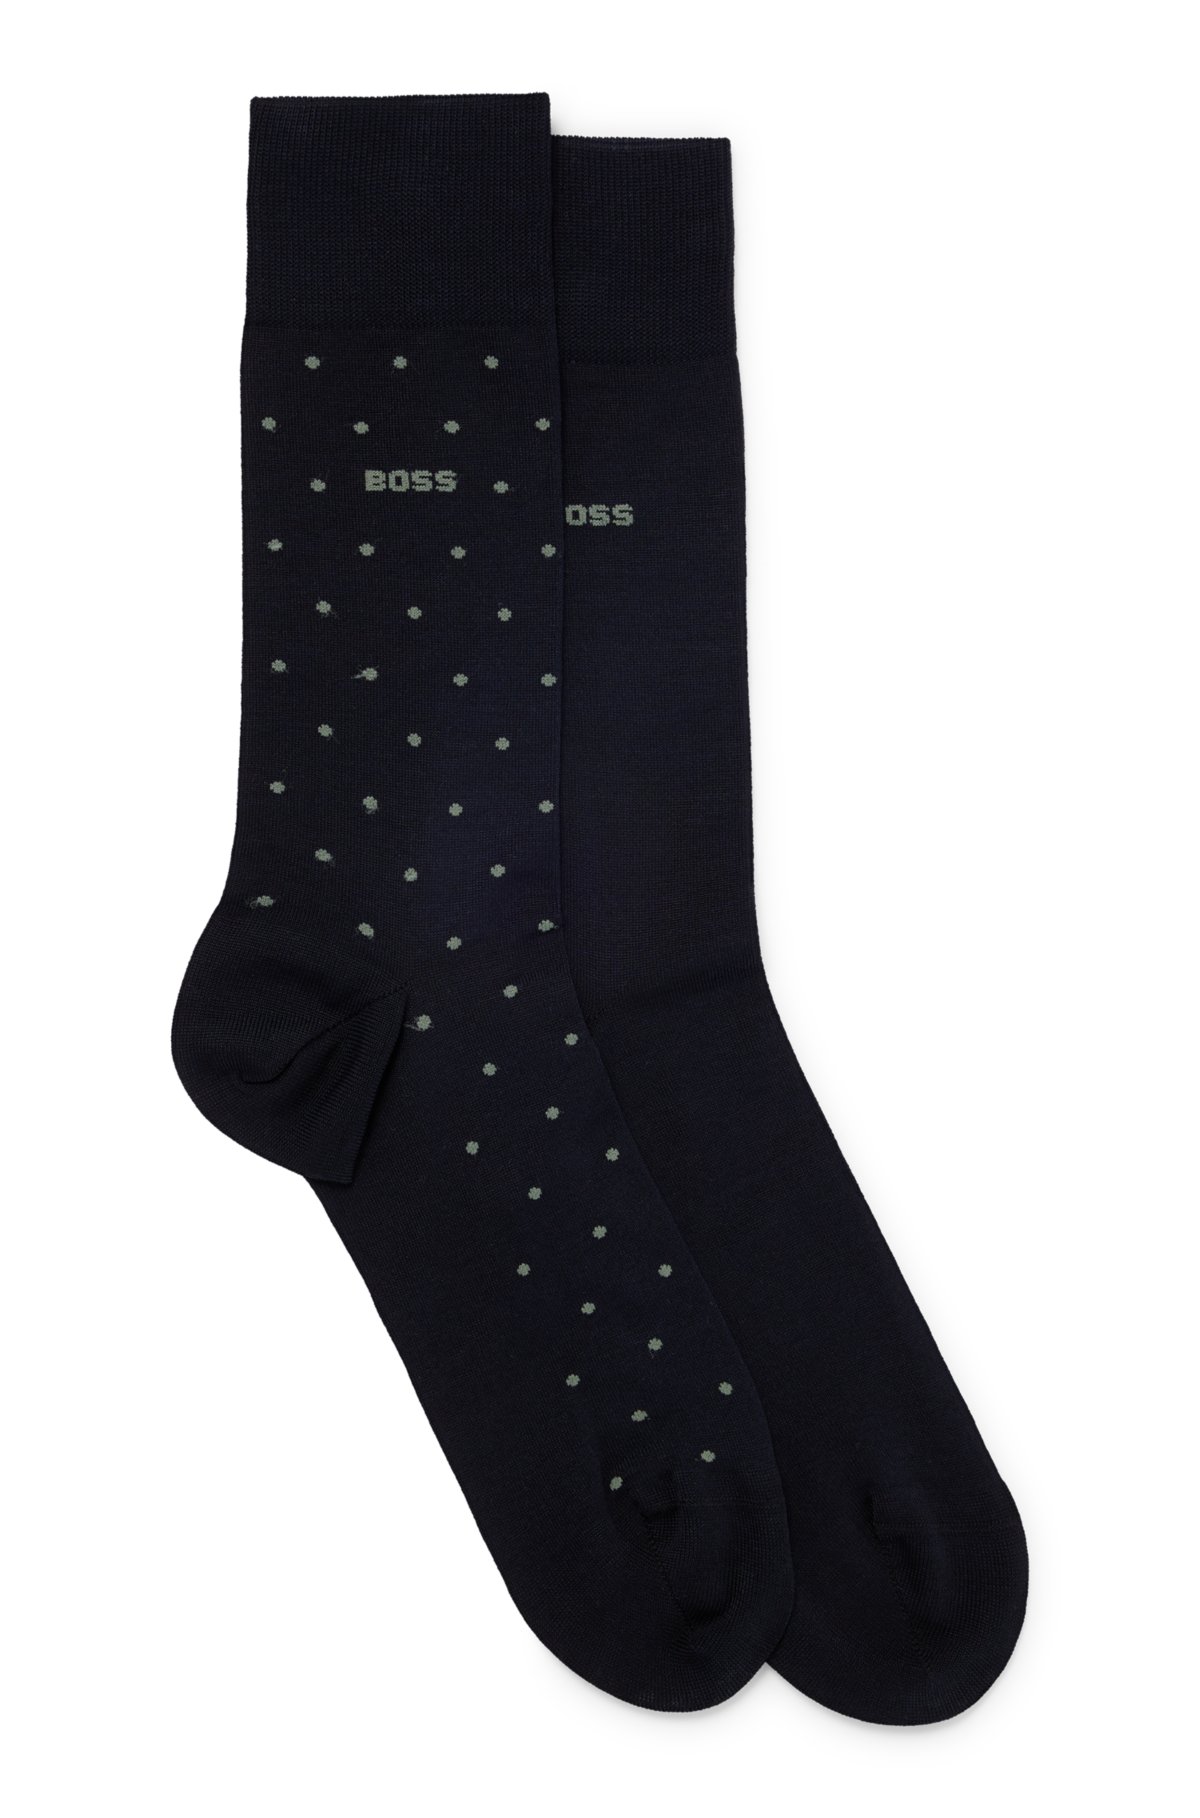 BOSS - Two-pack of regular-length socks in mercerized fabric